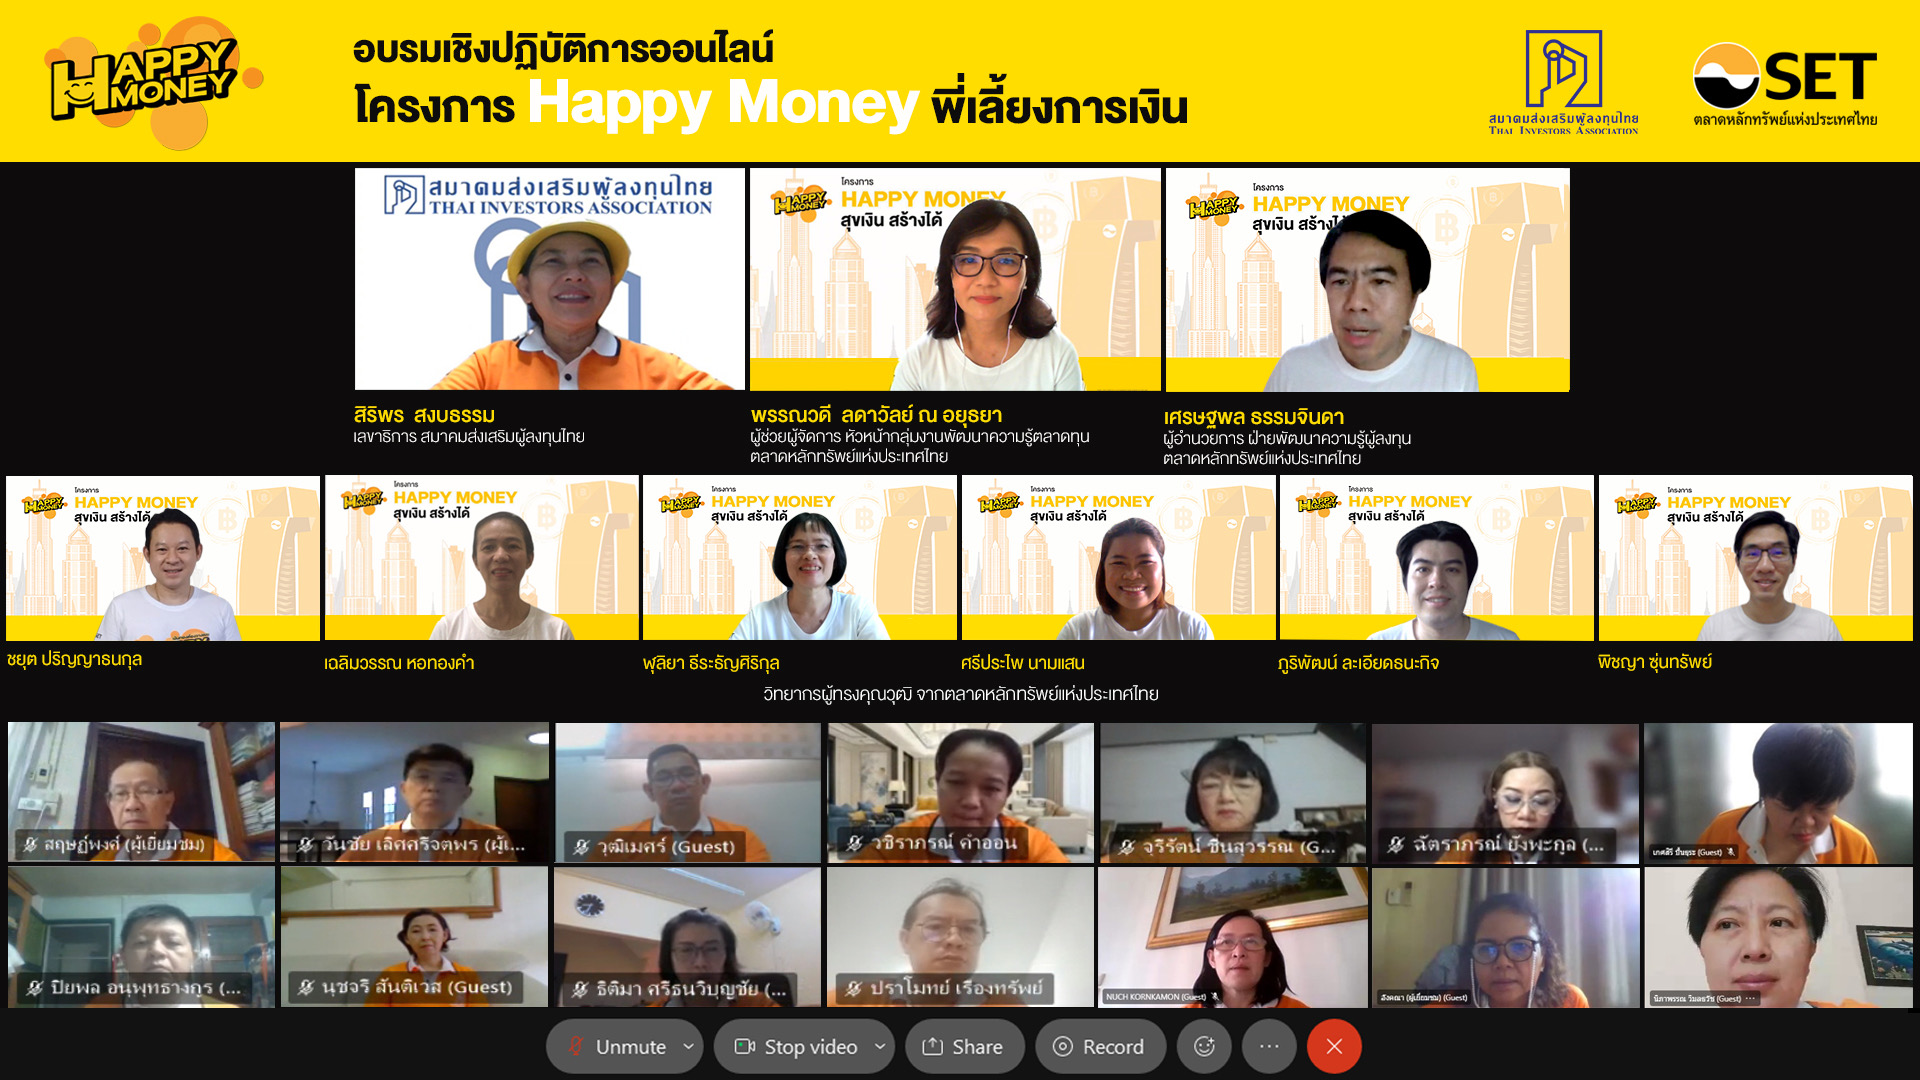 ตลท.ร่วมกับ สมาคมส่งเสริมผู้ลงทุนไทย จัดเวิร์กชอปออนไลน์ “Happy Money พี่เลี้ยงการเงิน” แก่กลุ่มอาสาพิทักษ์สิทธิผู้ถือหุ้น